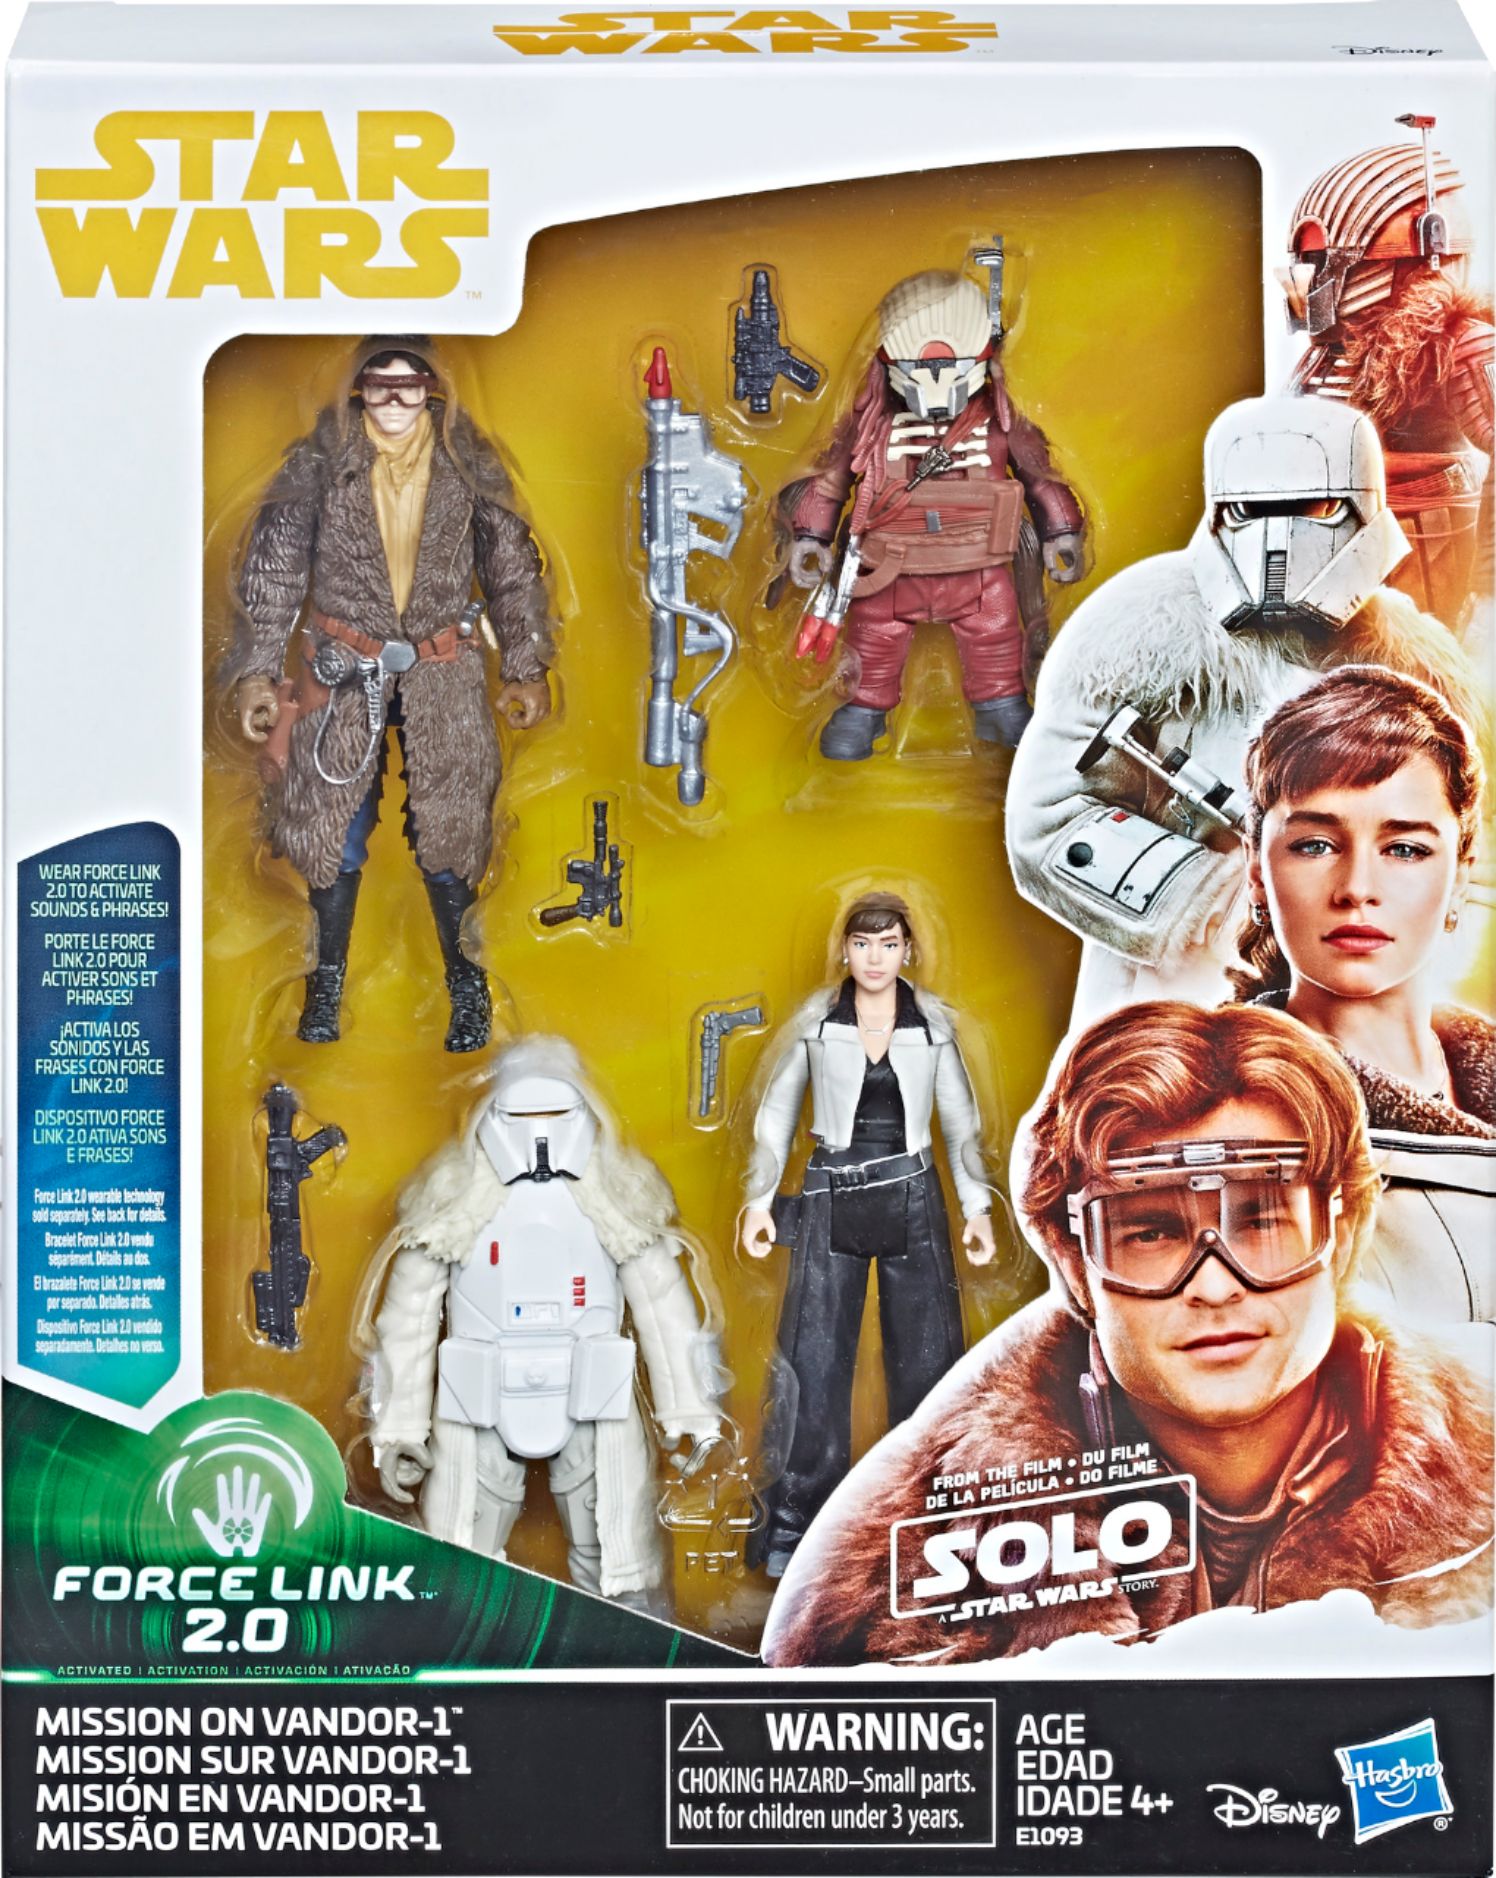 Hasbro Star Wars Force Link Starter Set including Force Link Action Figure for sale online